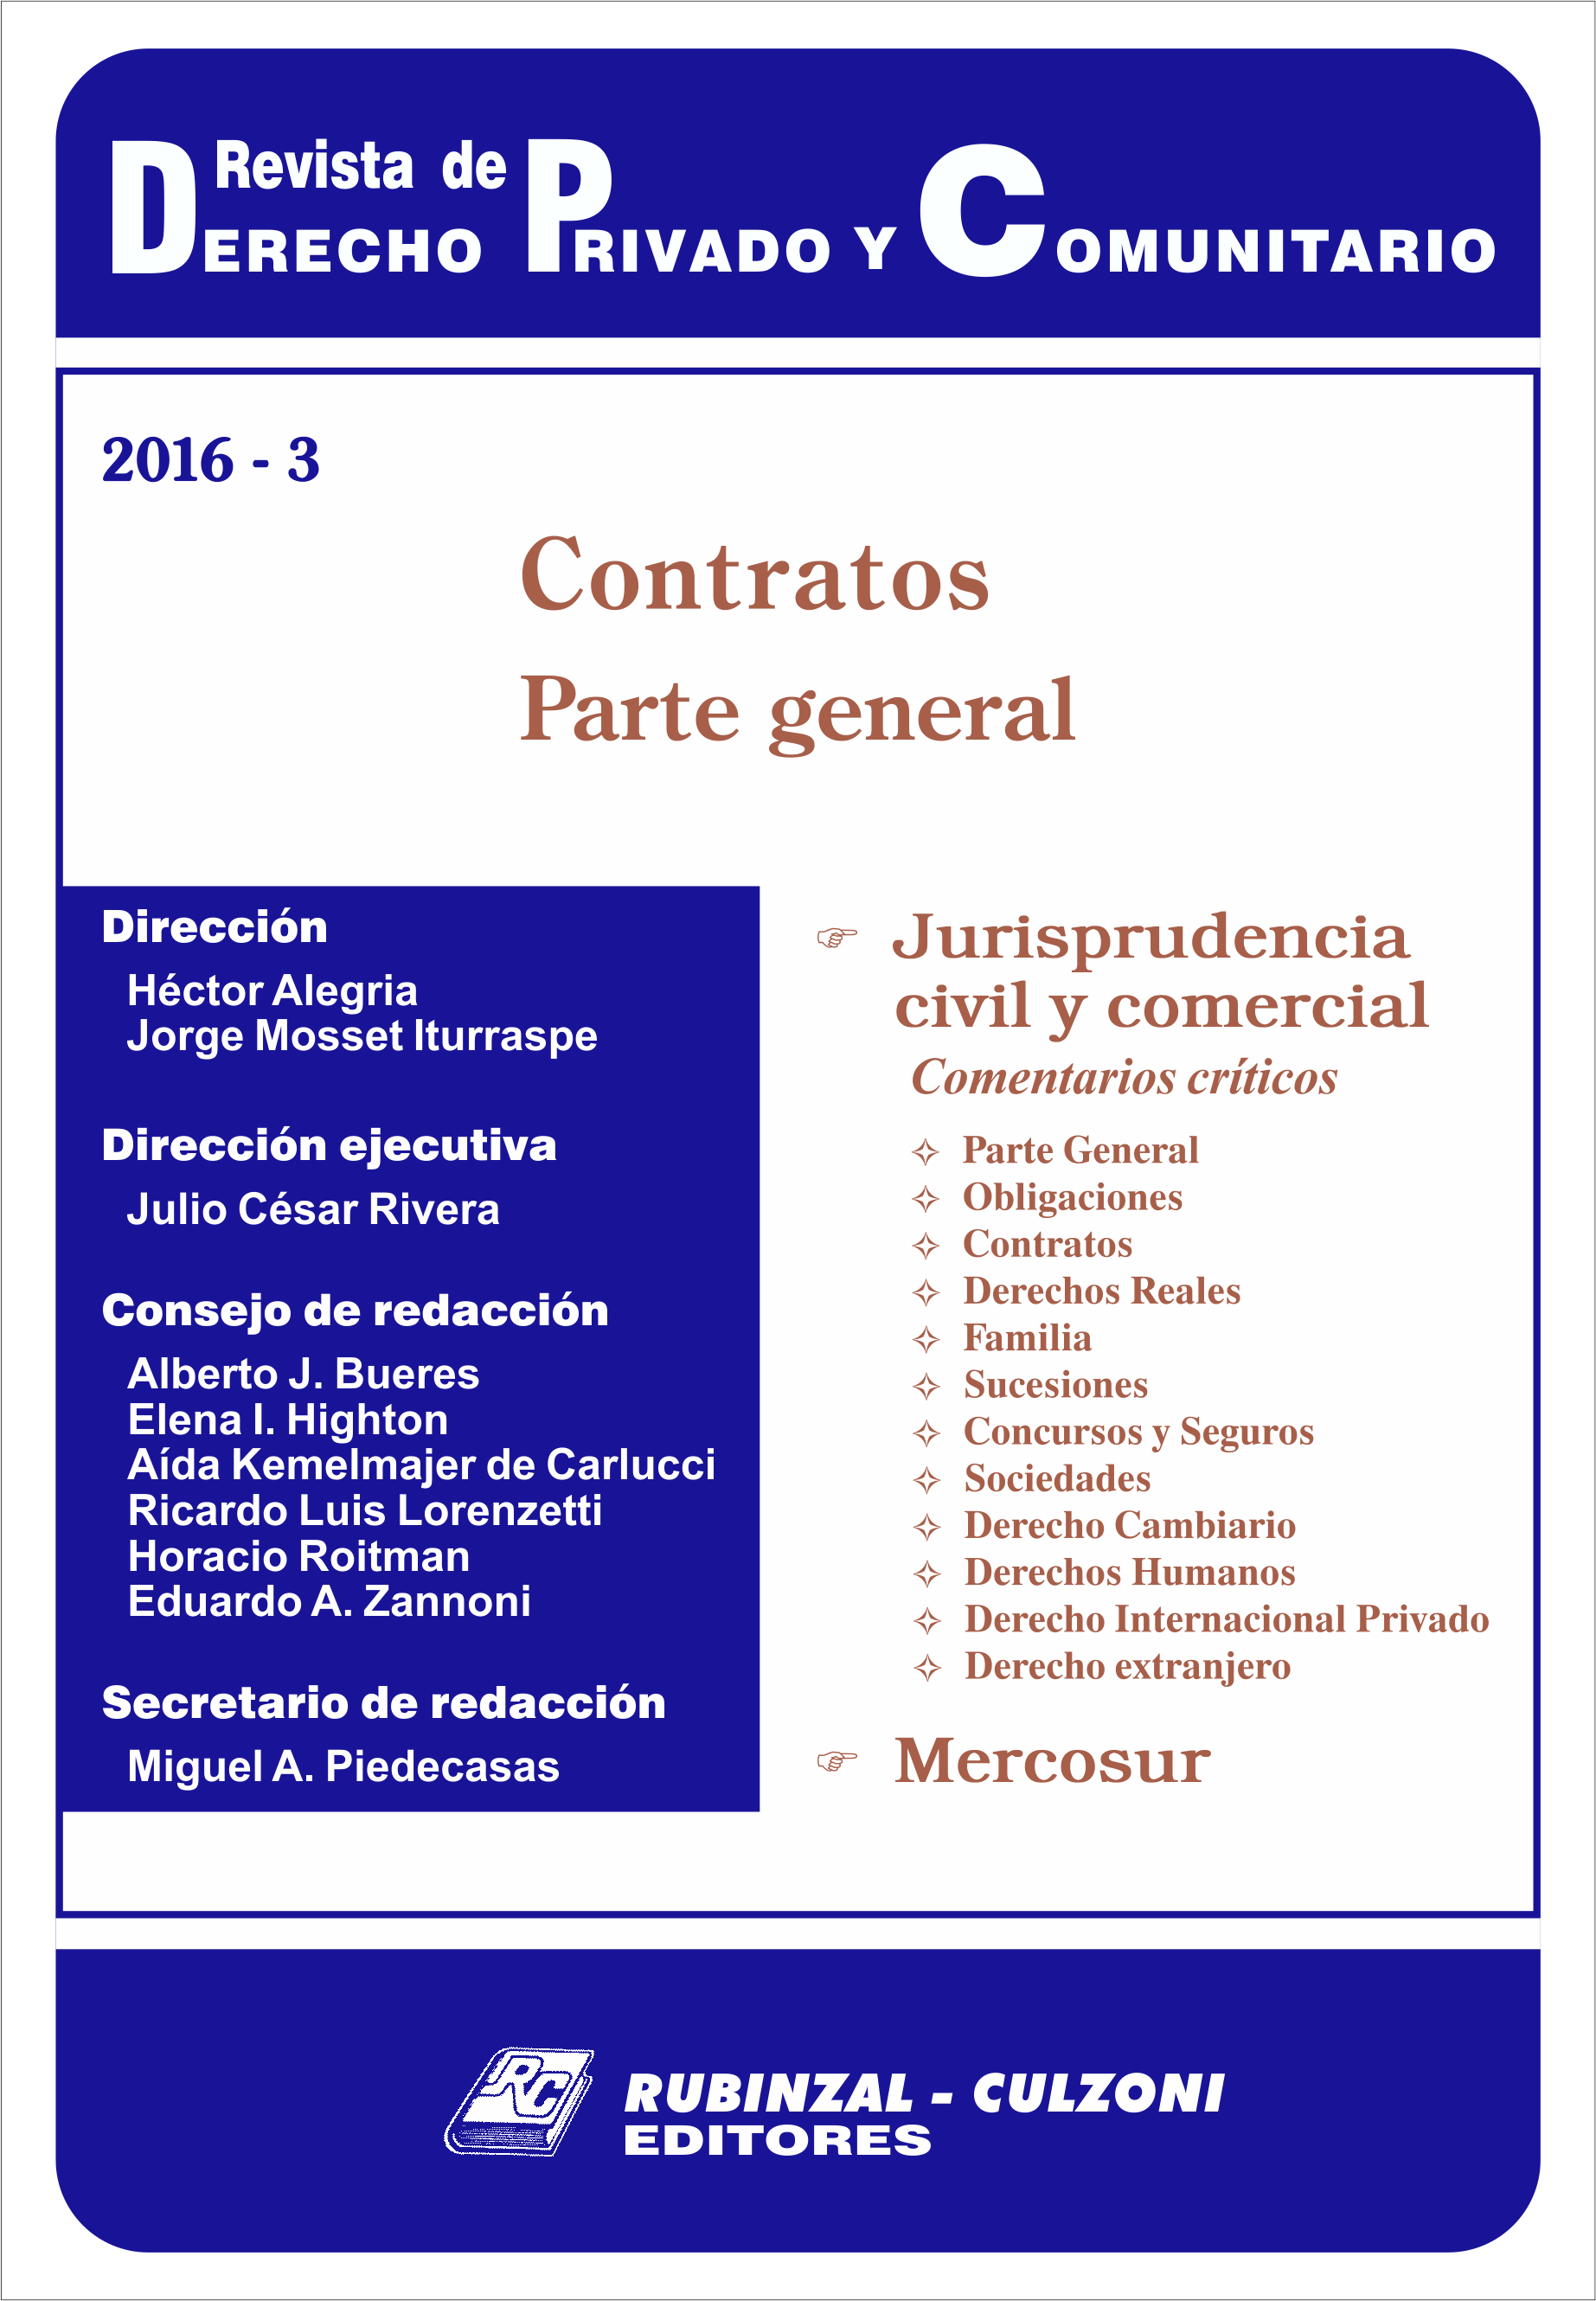 Contratos. Parte general. [2016-3]